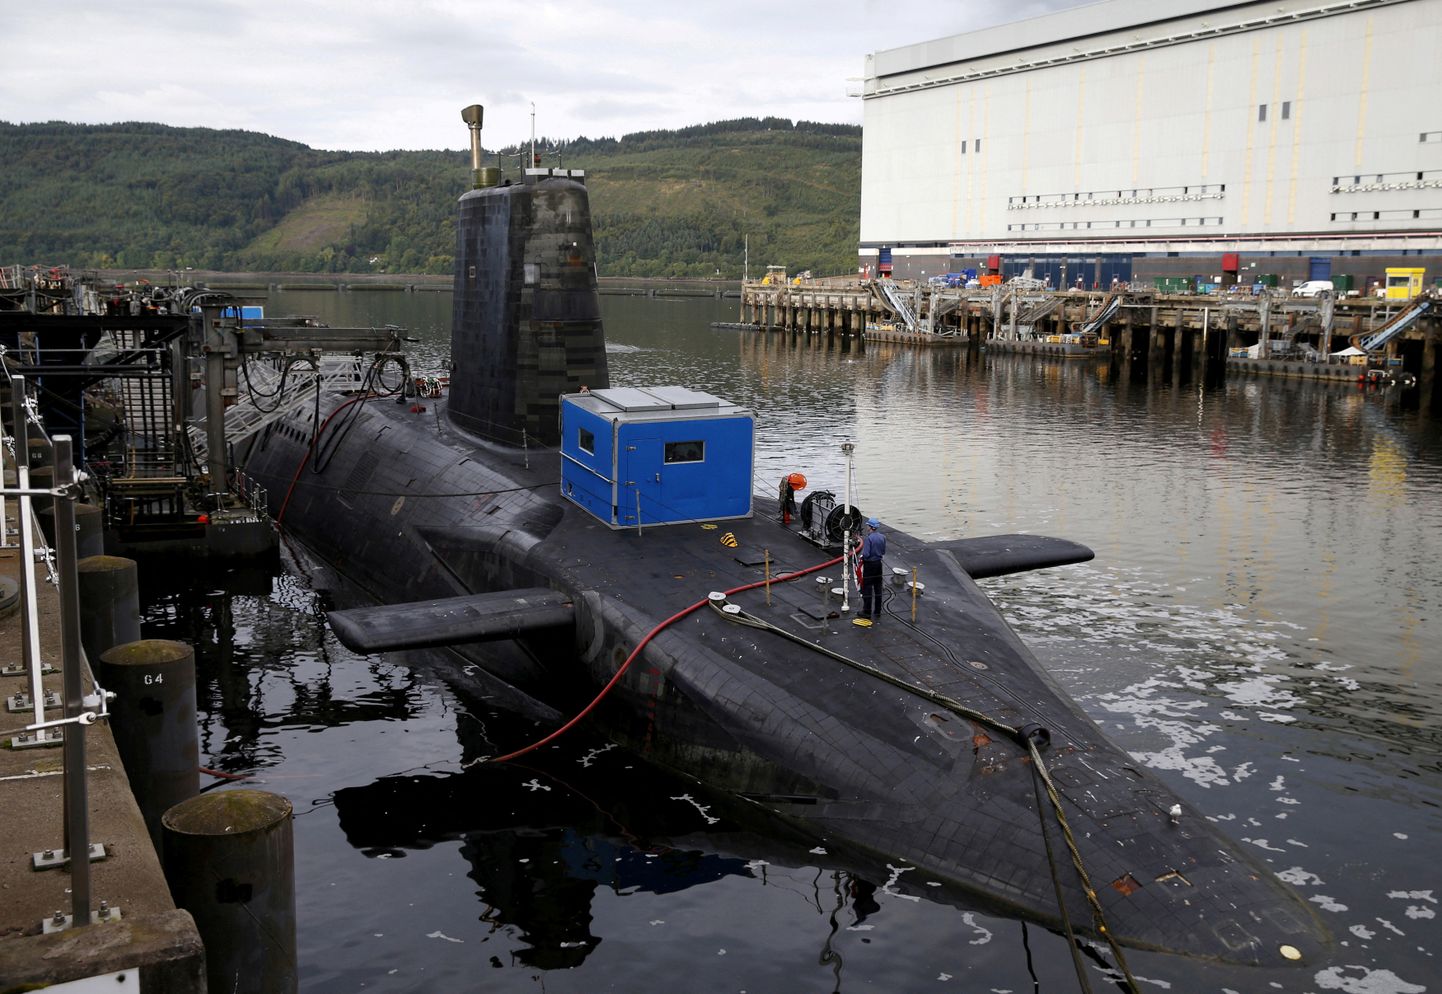 Briti tuumaallveelaev Šotimaa sadamas. Foto on illustreeriv.